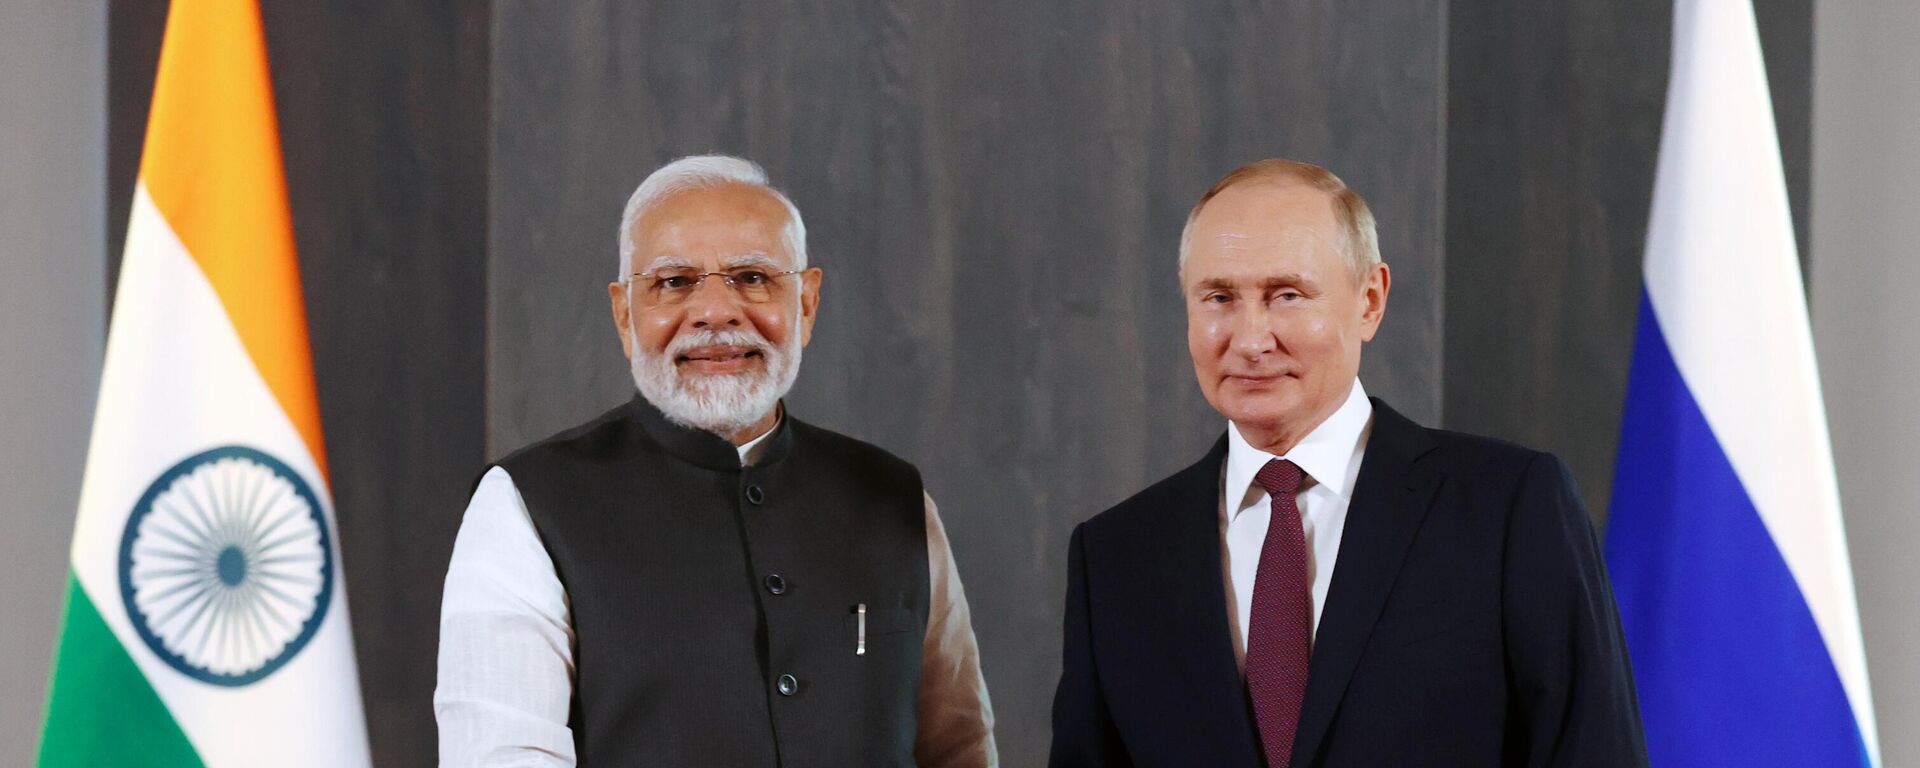 Rusya Devlet Başkanı Vladimir Putin, Semerkant’ta gerçekleşen Şanghay İşbirliği Örgütü (ŞİÖ) Devlet Başkanları 22. Toplantısı kapsamında Hindistan Başbakanı Narendra Modi ile bir araya geldi. - Sputnik Türkiye, 1920, 23.09.2022